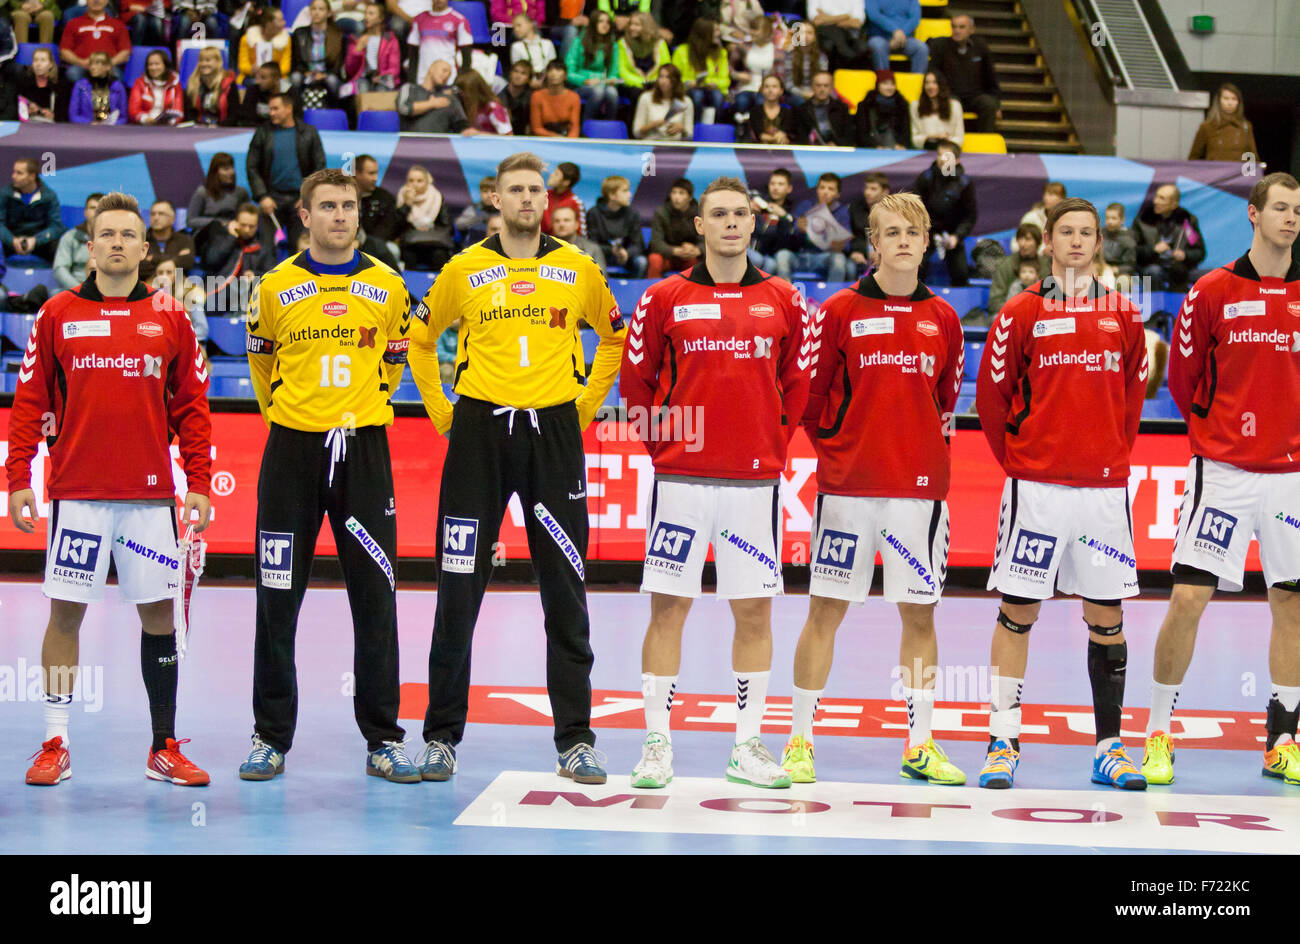 Kiew, UKRAINE - 18. Oktober 2014: Handballer des Aalborg Team hören die Hymne vor europäischen Handball Champions League Spiel gegen Motor Stockfoto